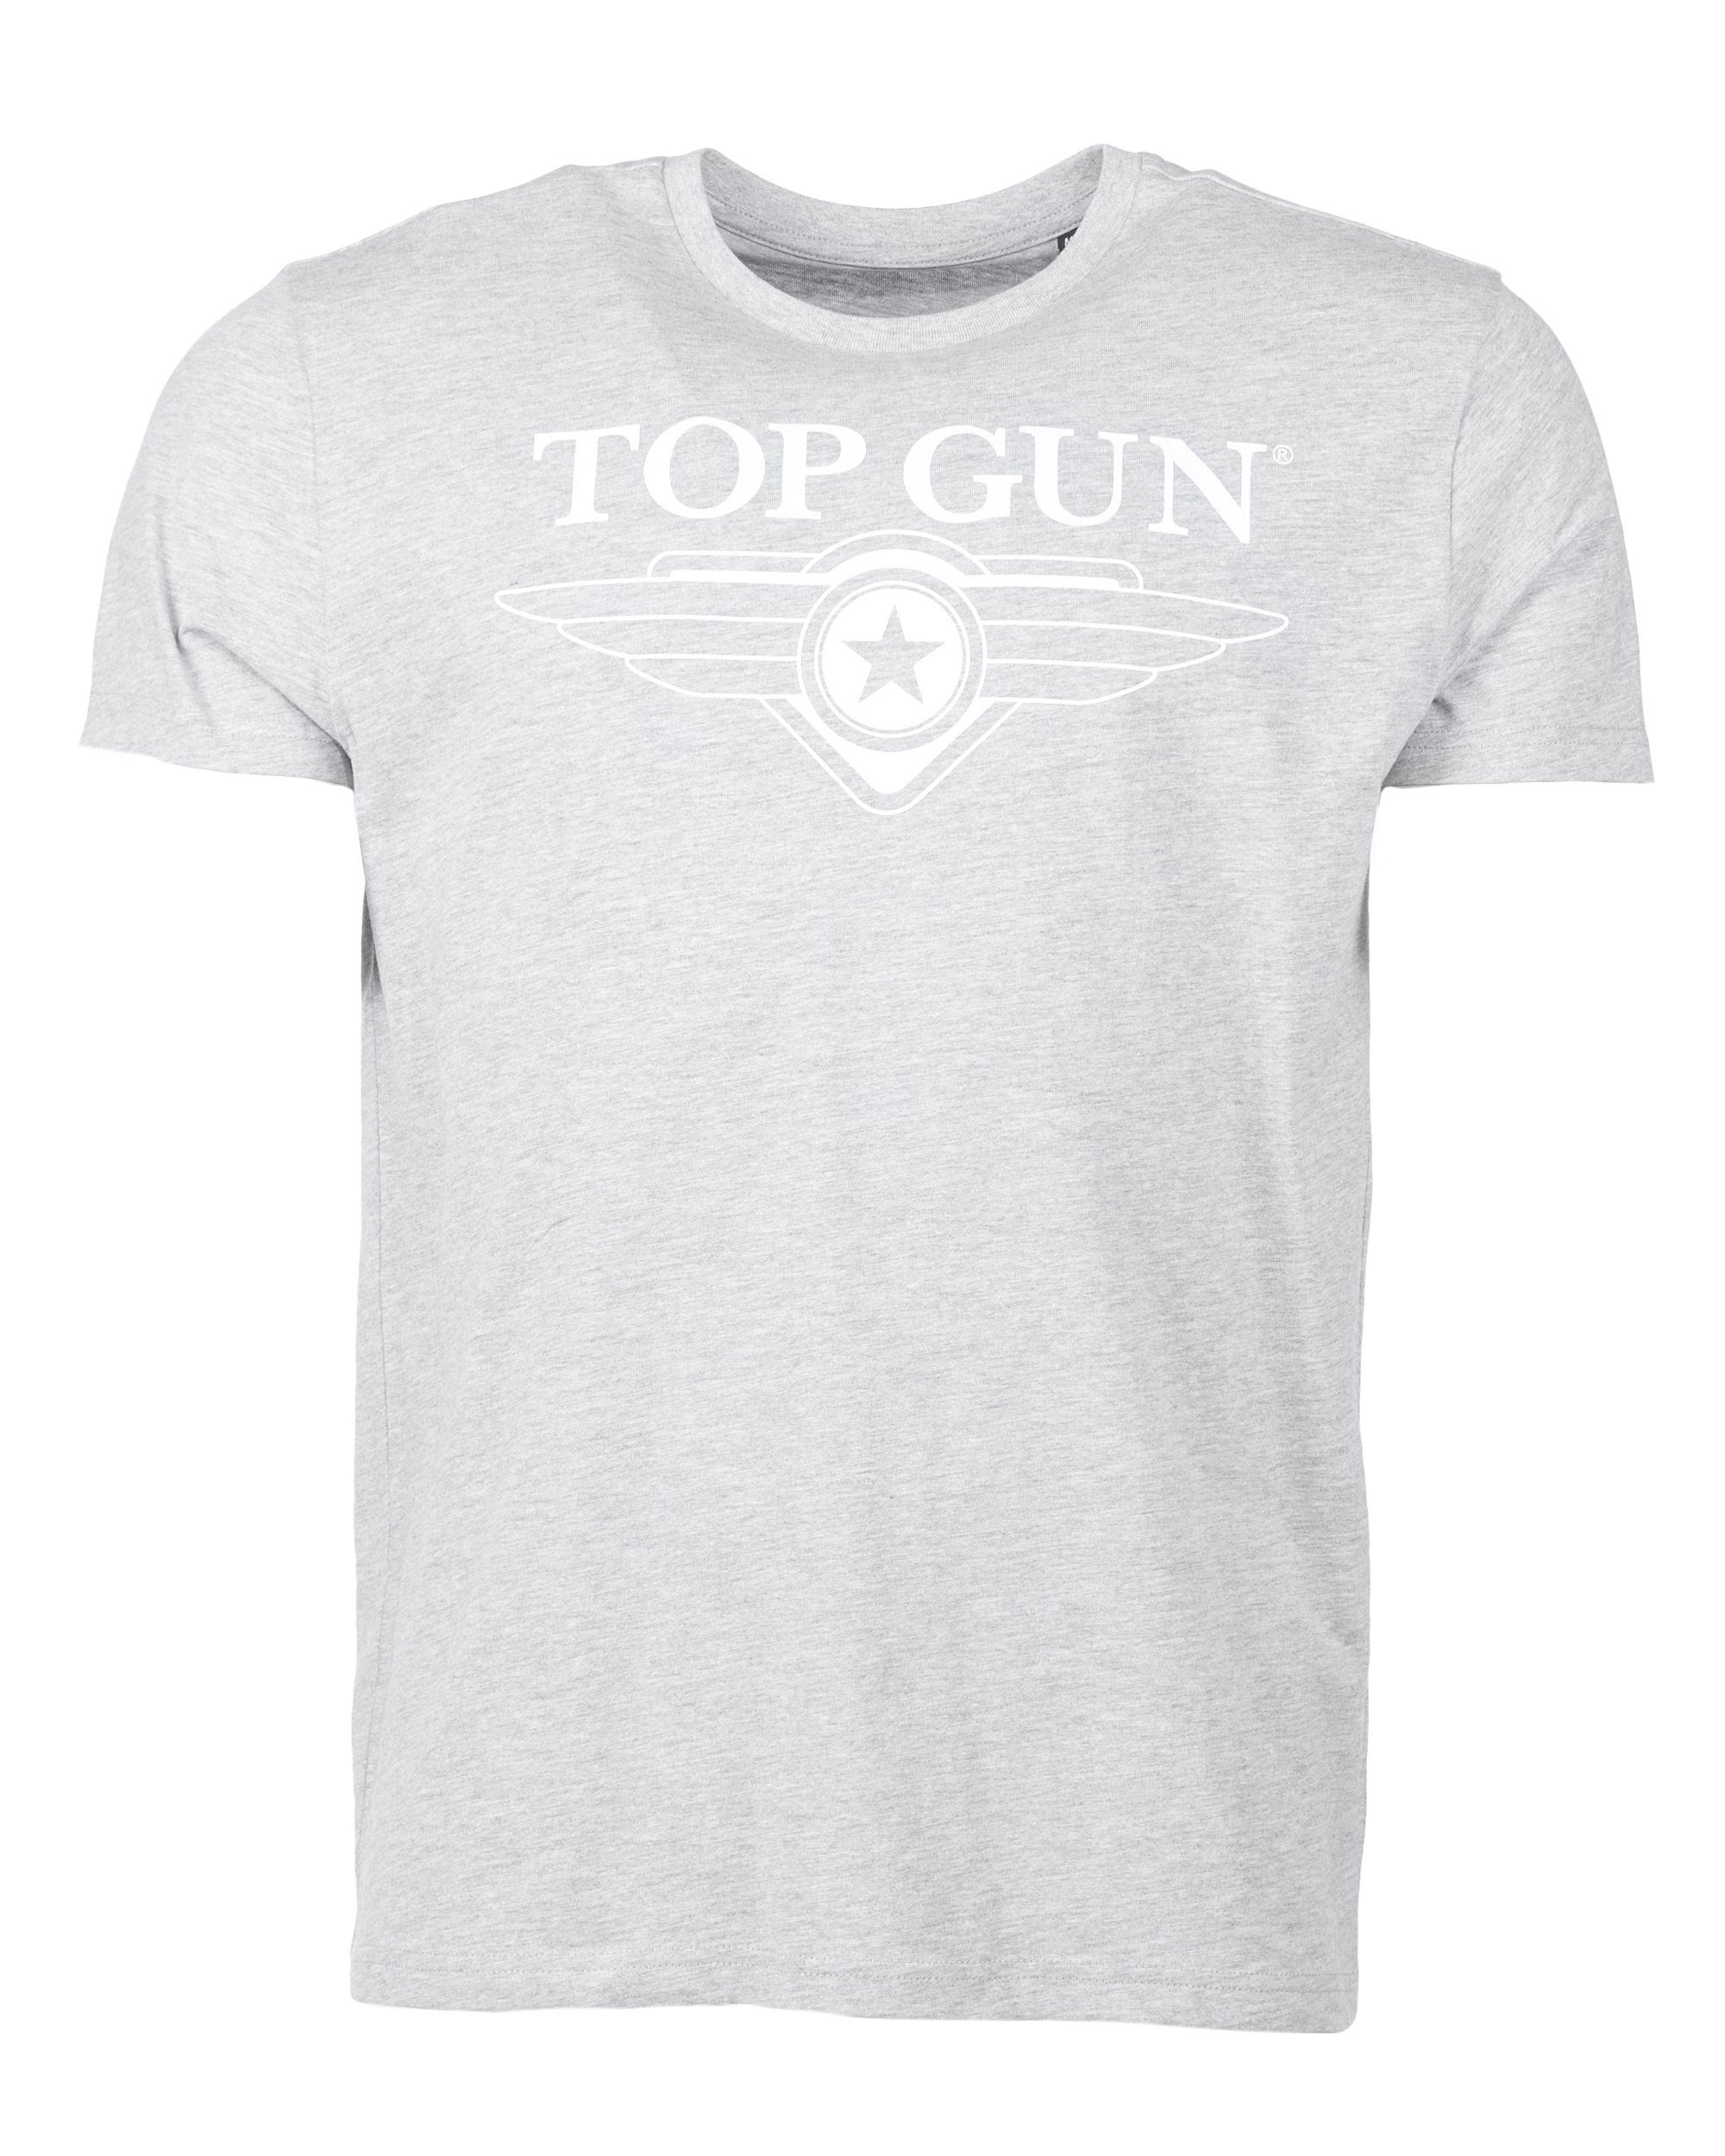 TG20201045 GUN melange TOP grey T-Shirt